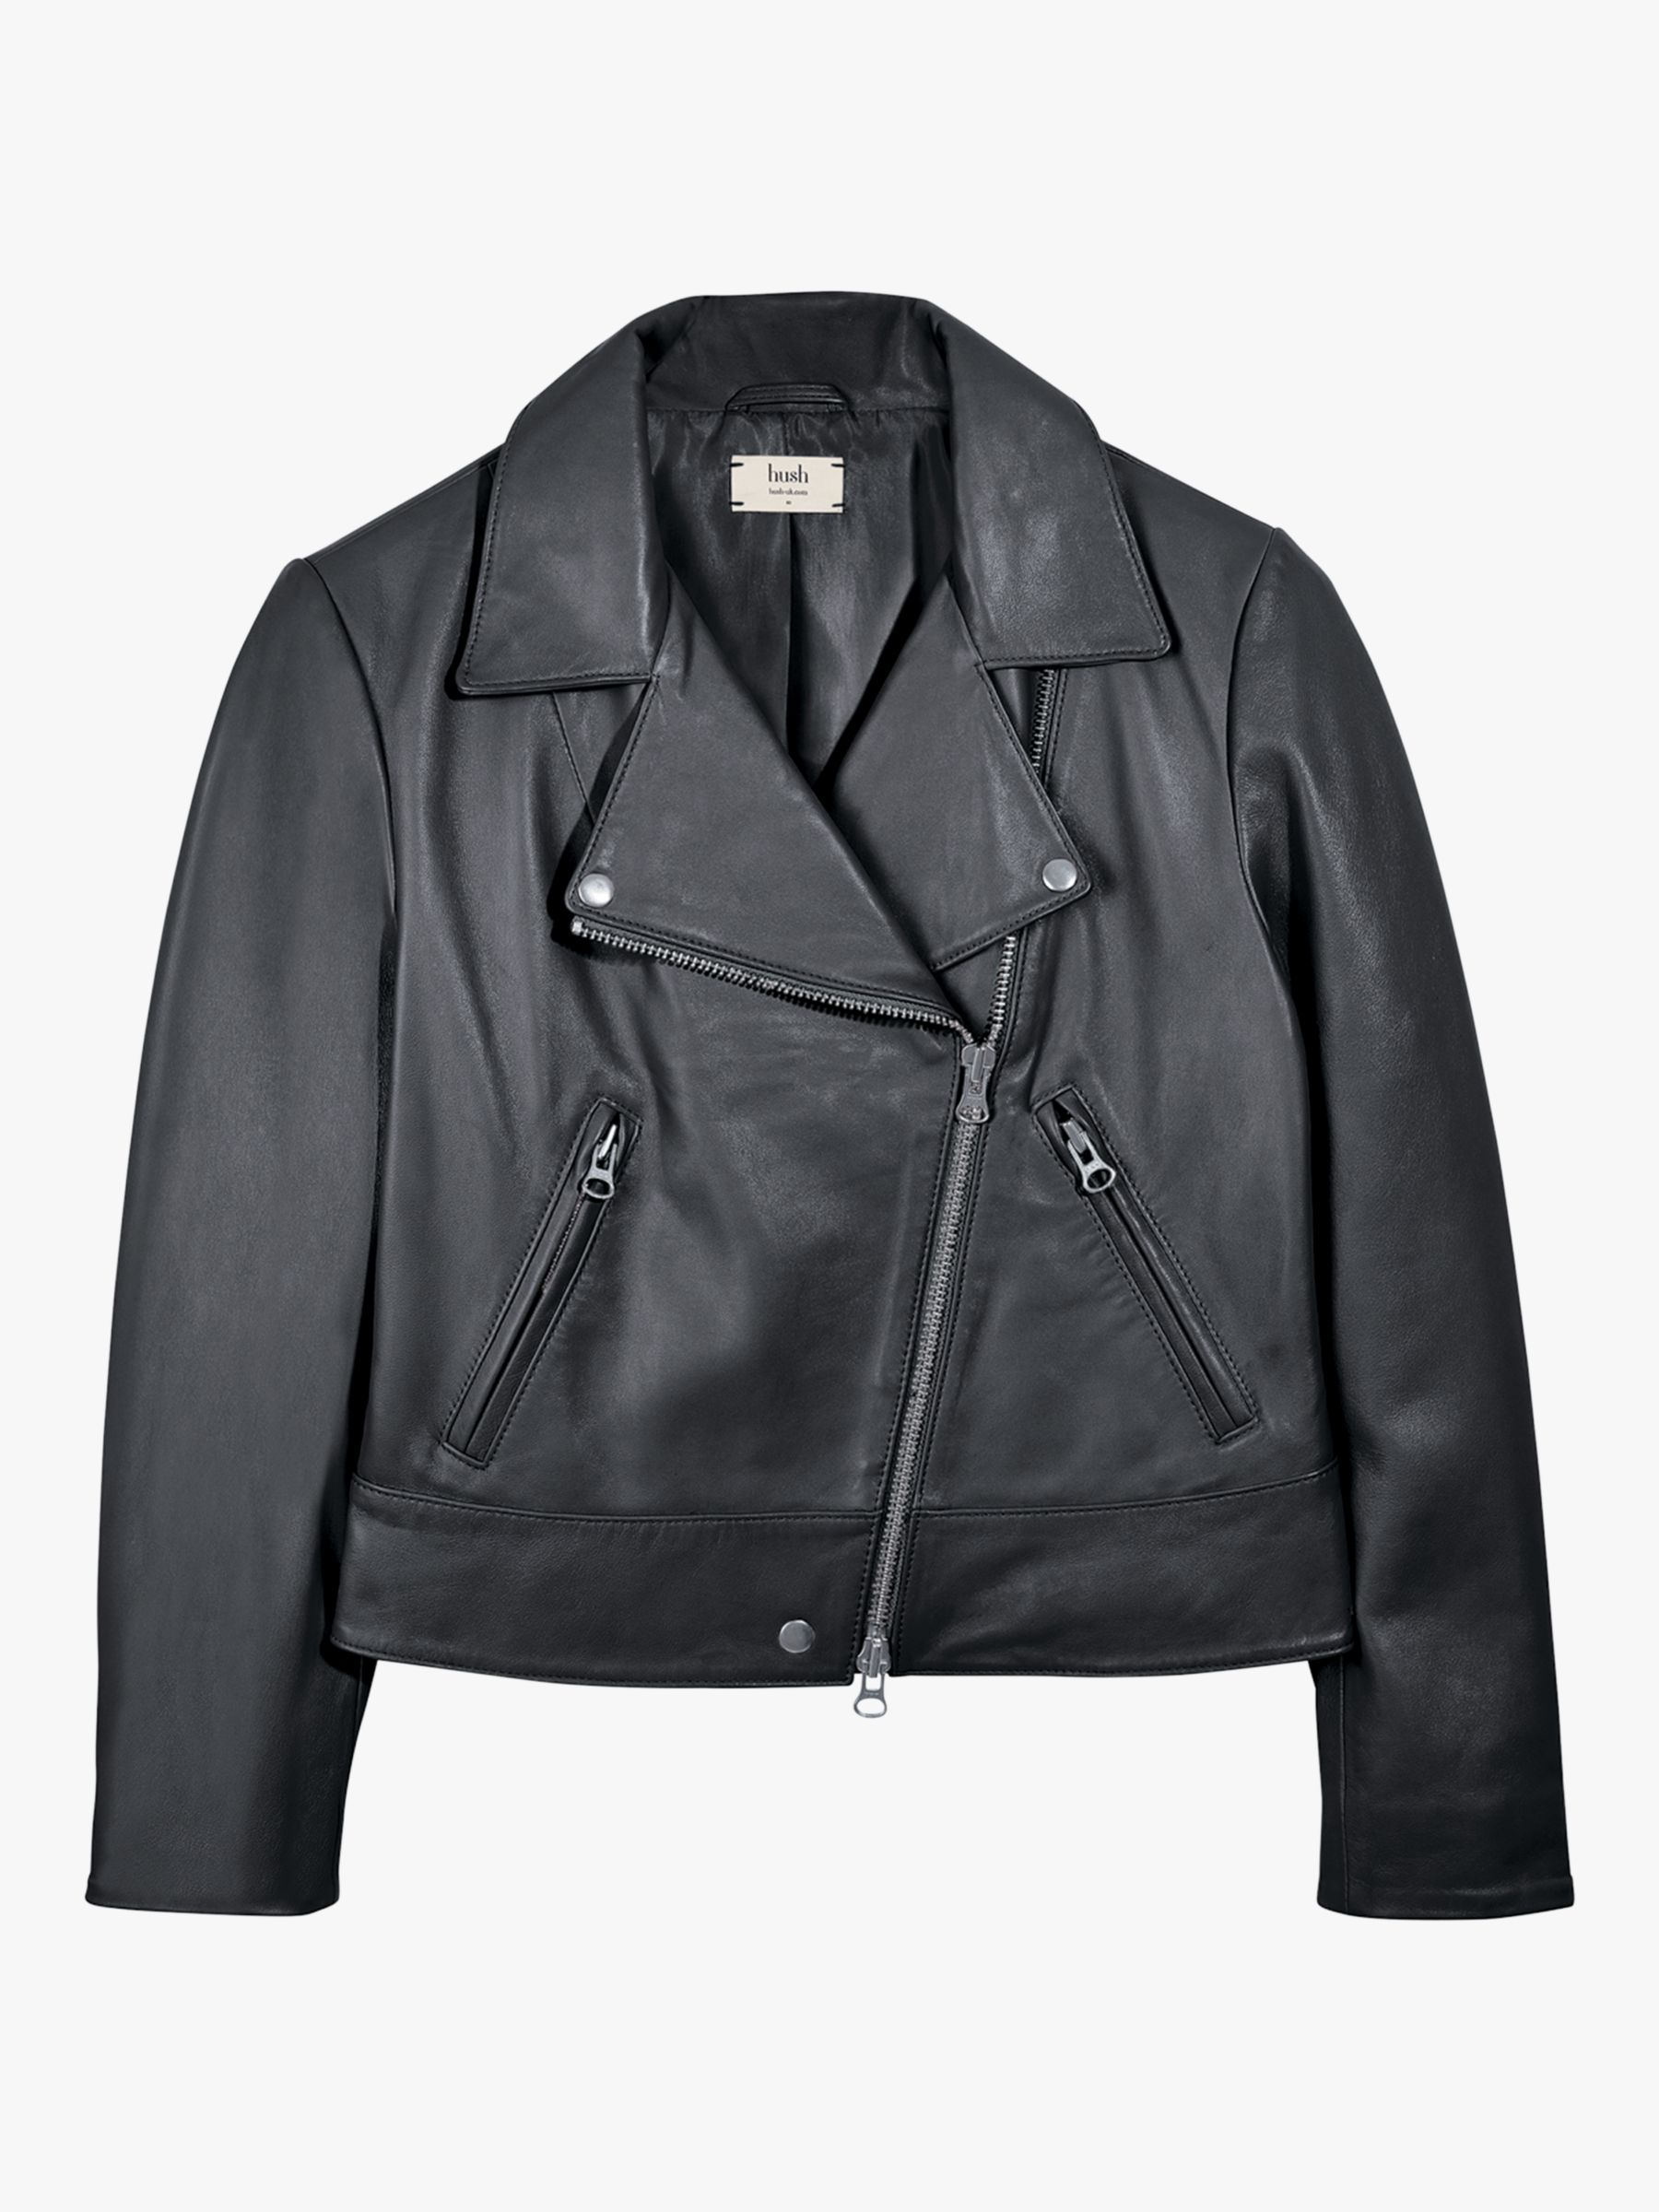 HUSH Onyx Leather Jacket, Black, 6